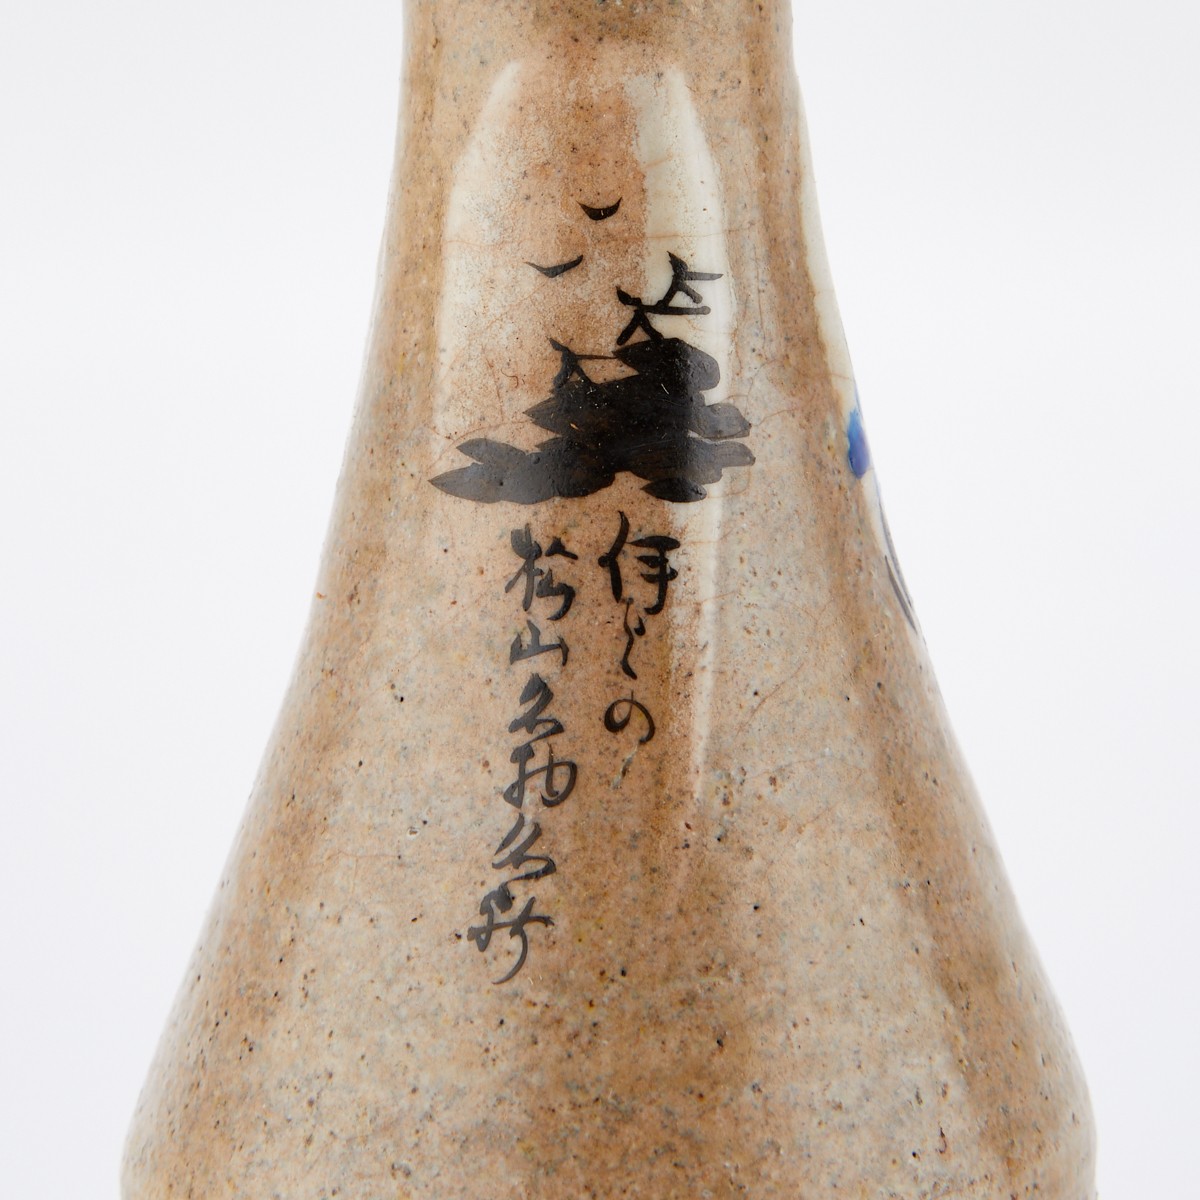 Grp: 4 Japanese Ceramic Sake Bottles 2 Pairs - Image 9 of 16